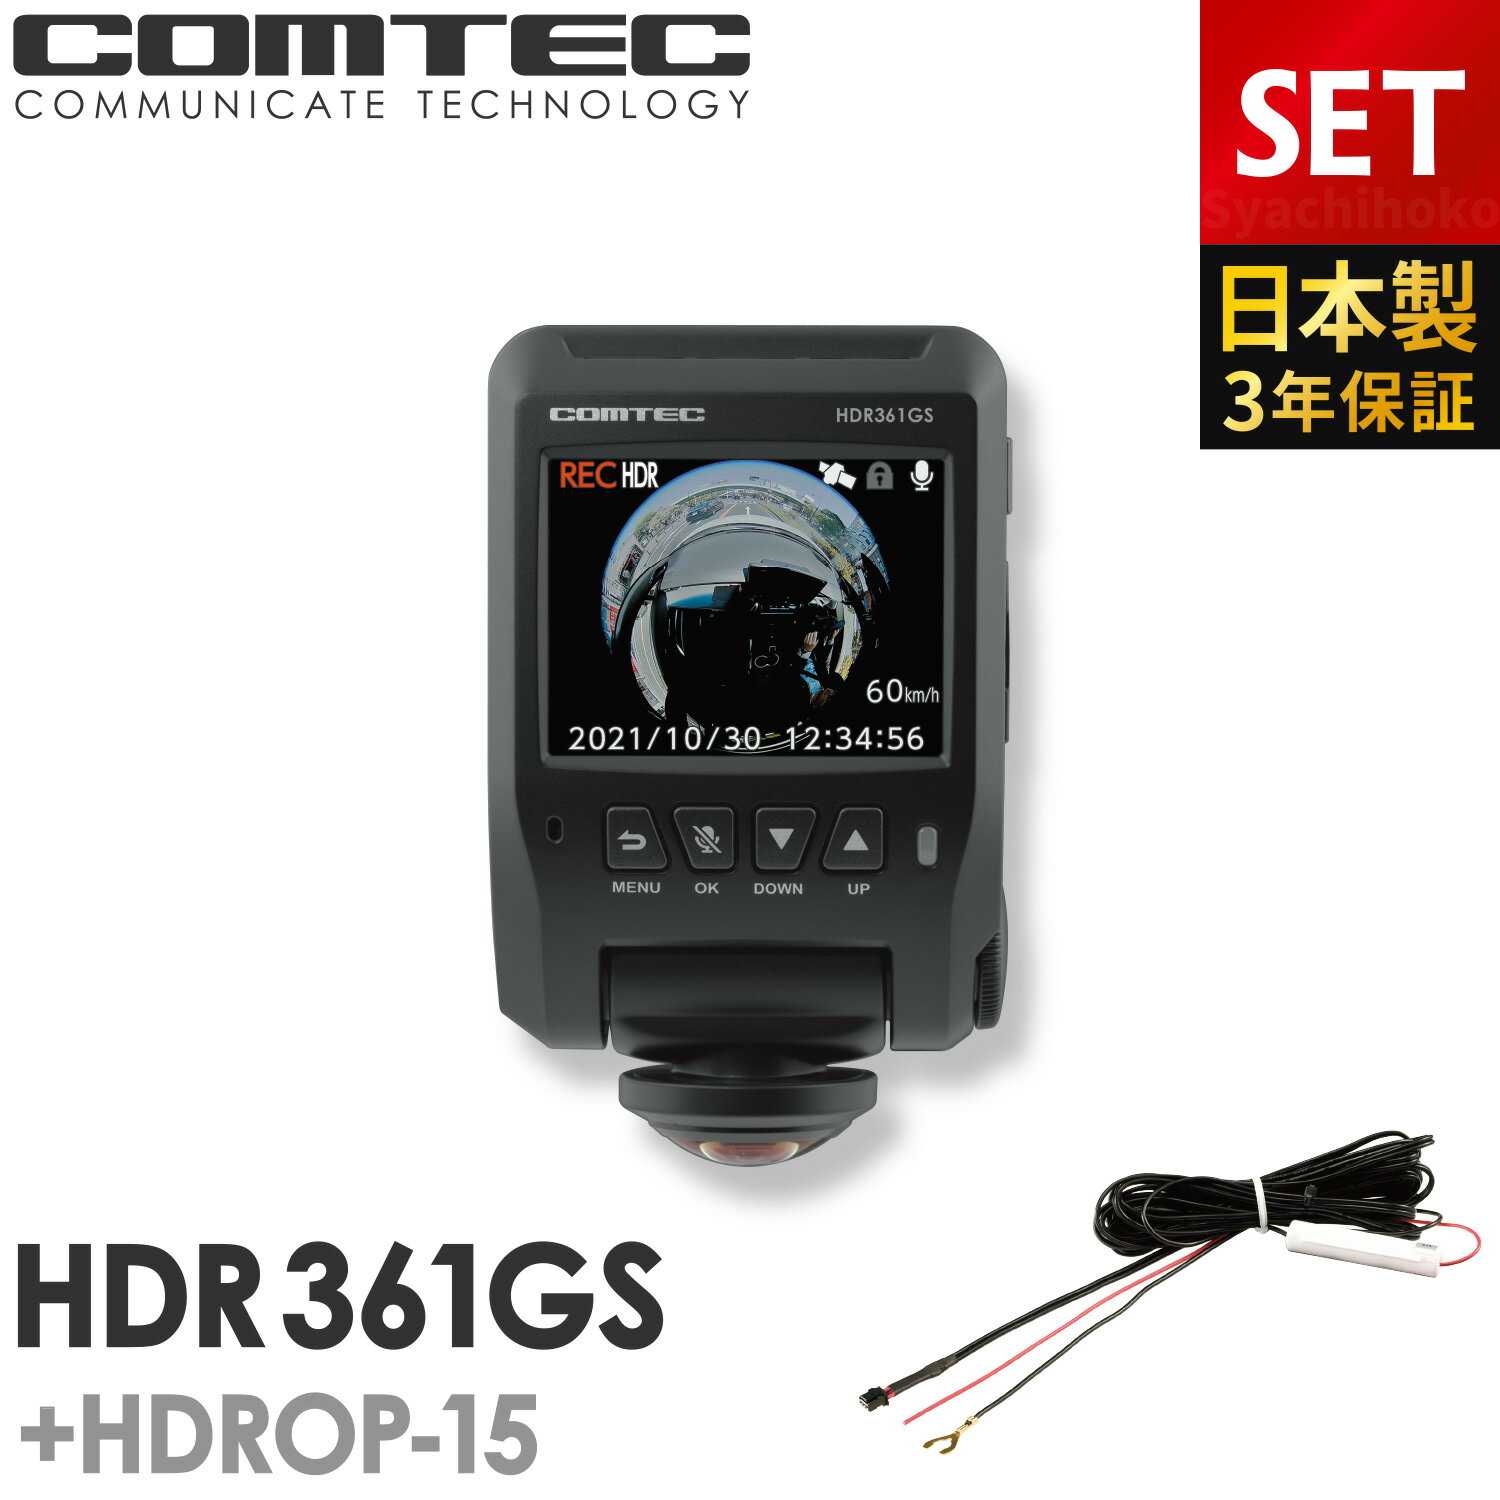 ドライブレコーダー 日本製 3年保証 360度カメラ コムテック HDR361GS+HDROP-15 直接配線コードセット 前後左右 全方位記録 ノイズ対策済 常時 衝撃録画 GPS搭載 駐車監視対応 2.4インチ液晶 ドラレコ